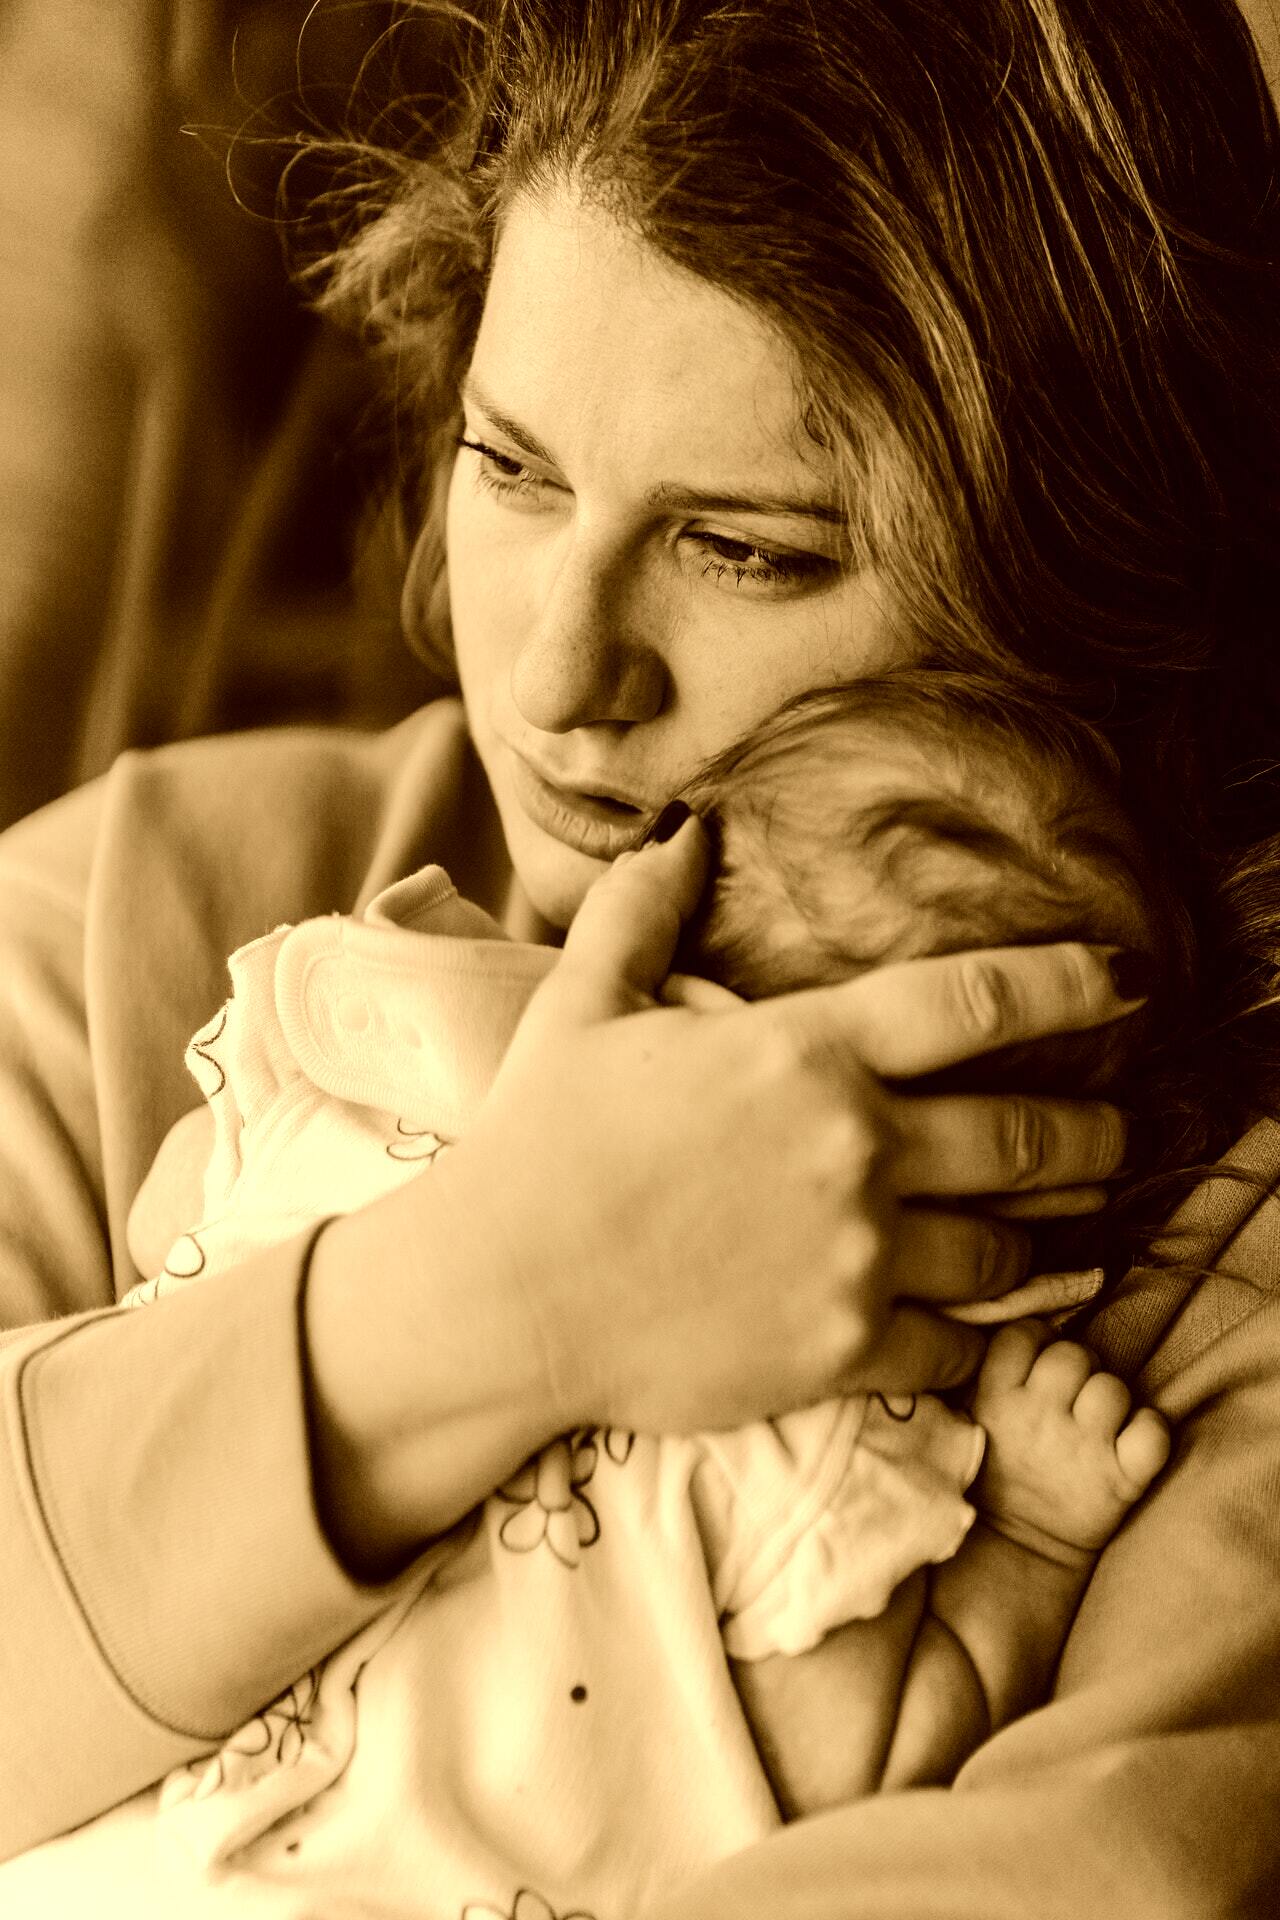 Une mère célibataire désespérée les a laissés tous les deux à l'orphelinat. | Source : Pexels